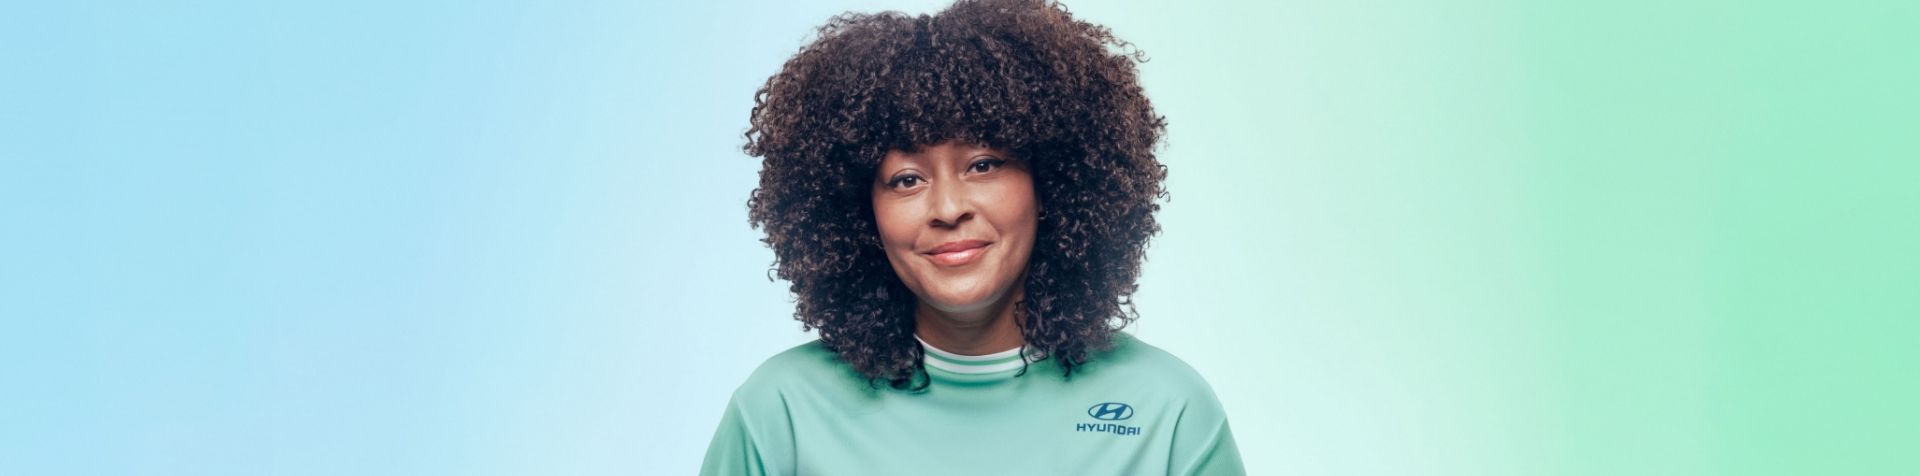 니키 우의 얼굴이 클로즈업 된 사진입니다. 그녀는 곱슬머리에 현대자동차의 로고가 새겨진 연두색 Team Century 유니폼을 입고 있습니다.